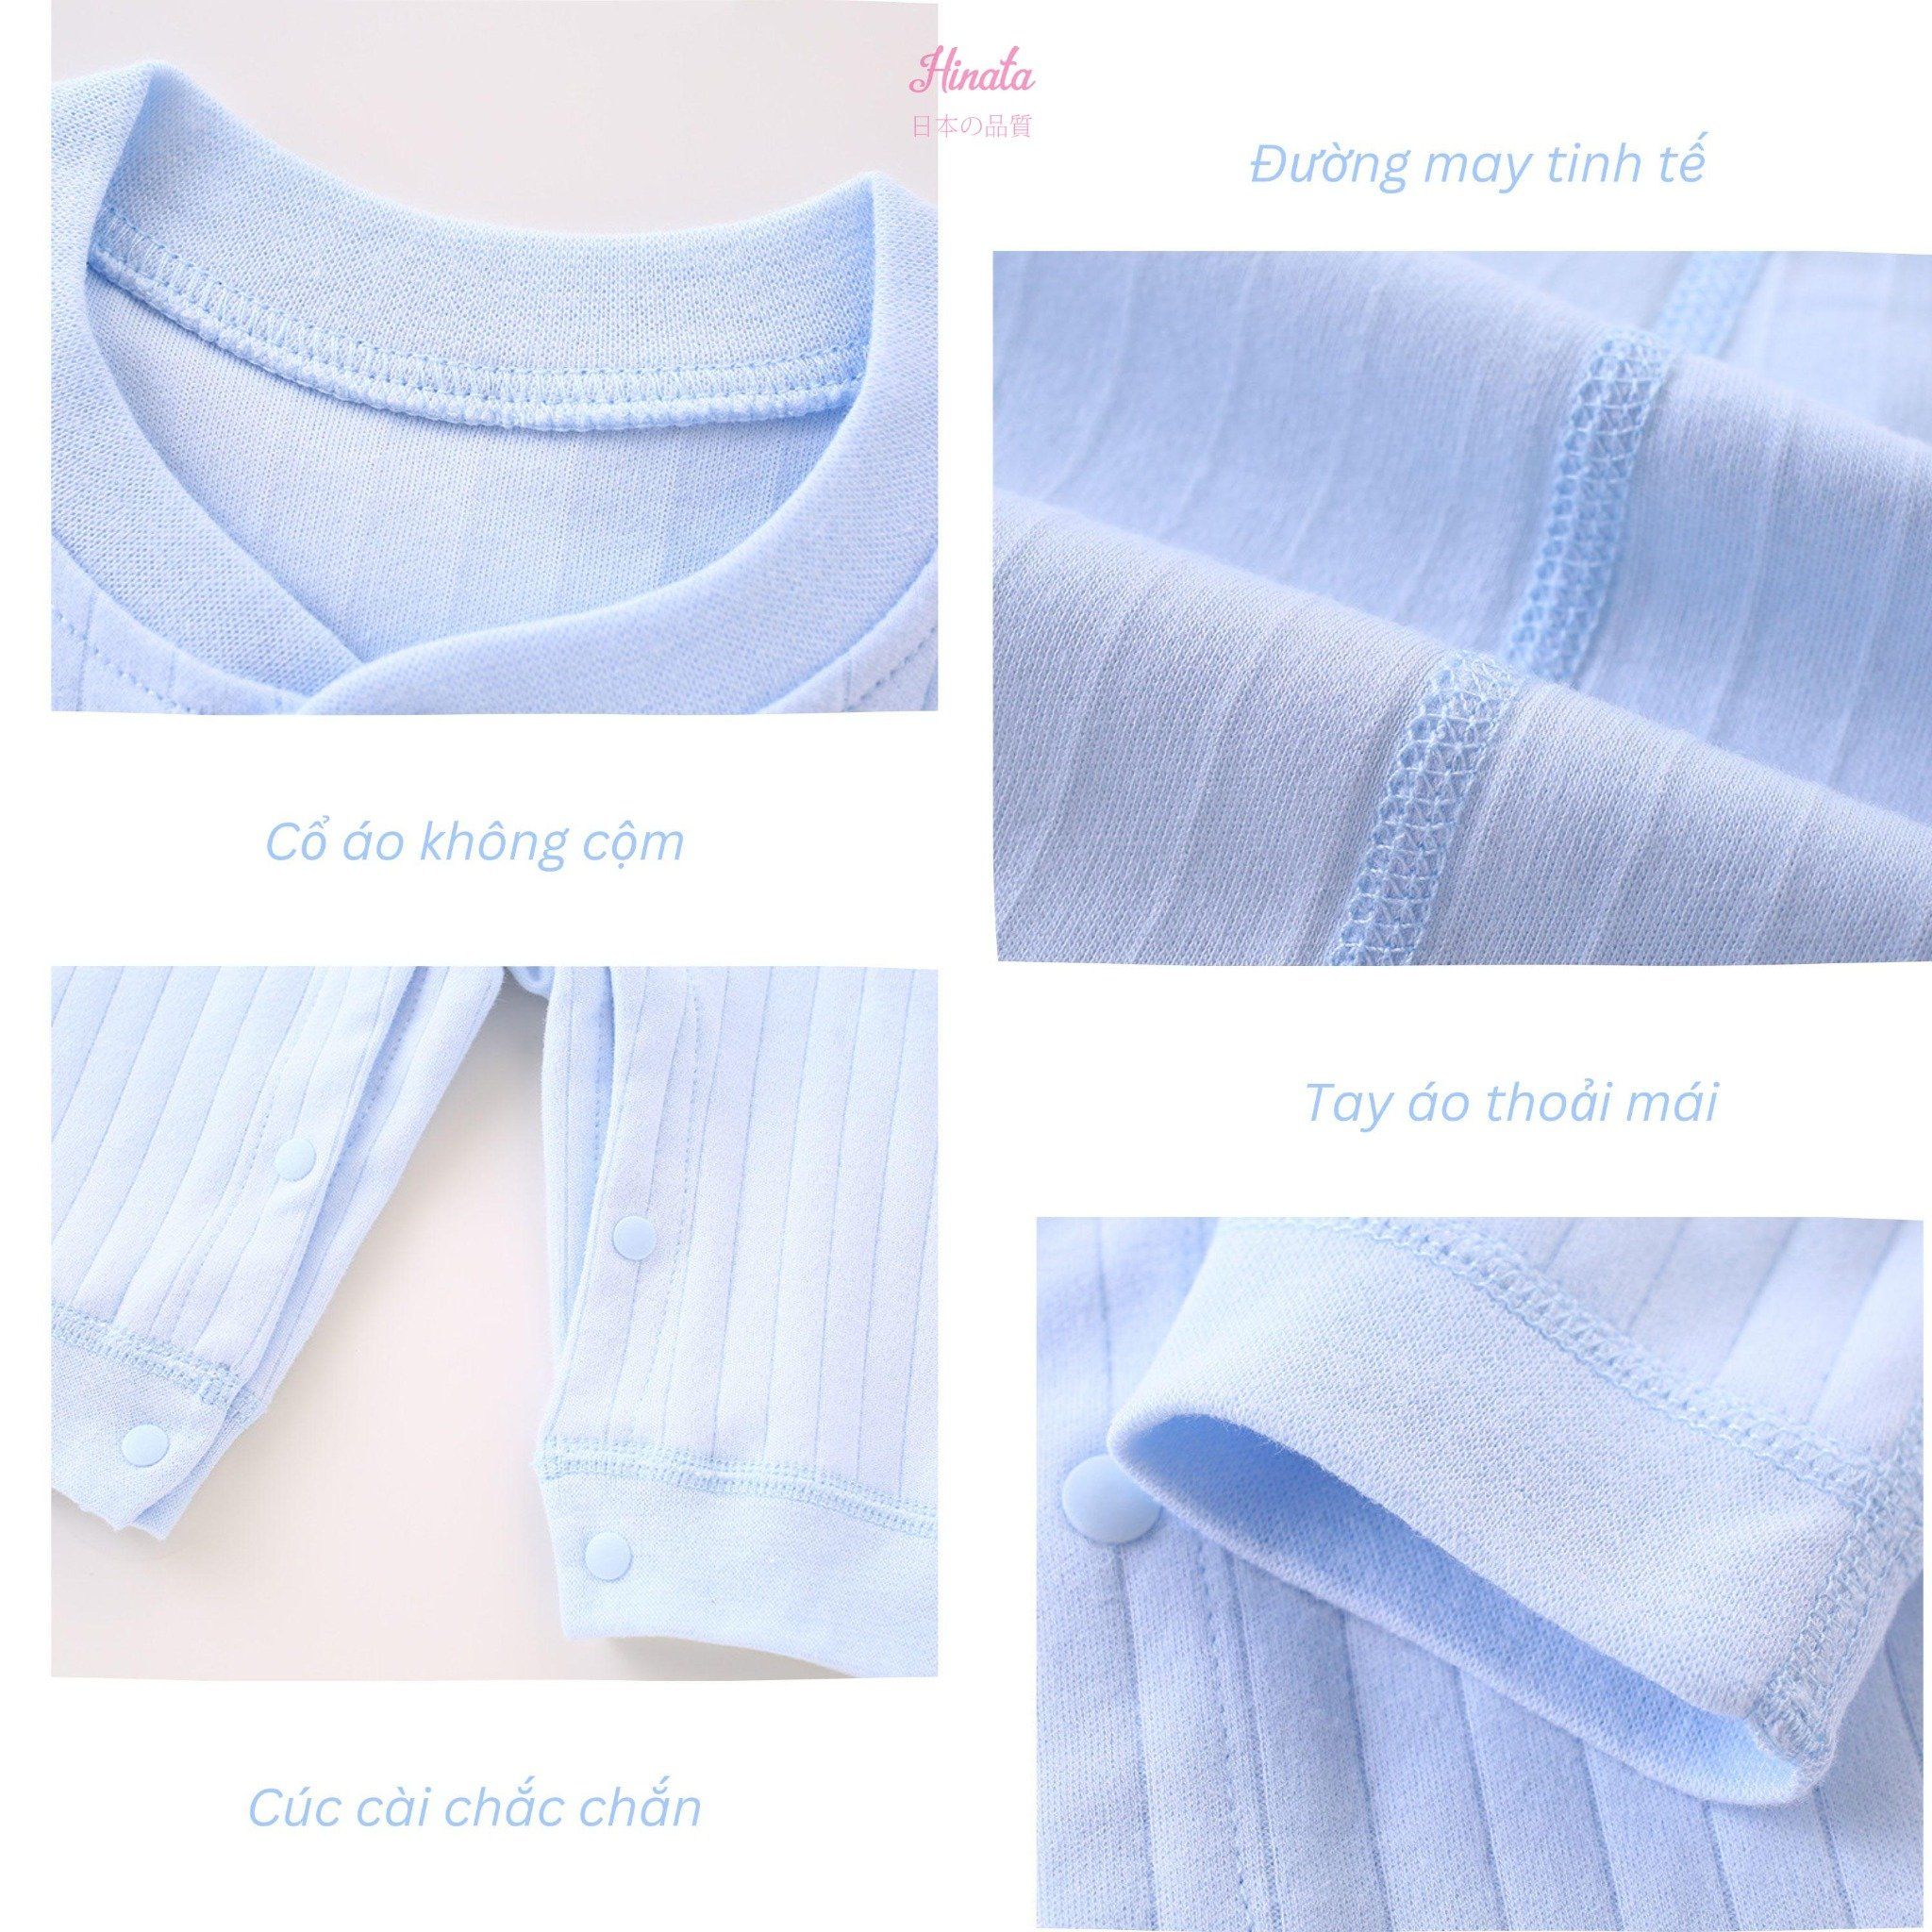  [01 Set] Body Sleepsuit unisex Hinata BF83 cho bé sơ sinh từ 0-6 tháng 